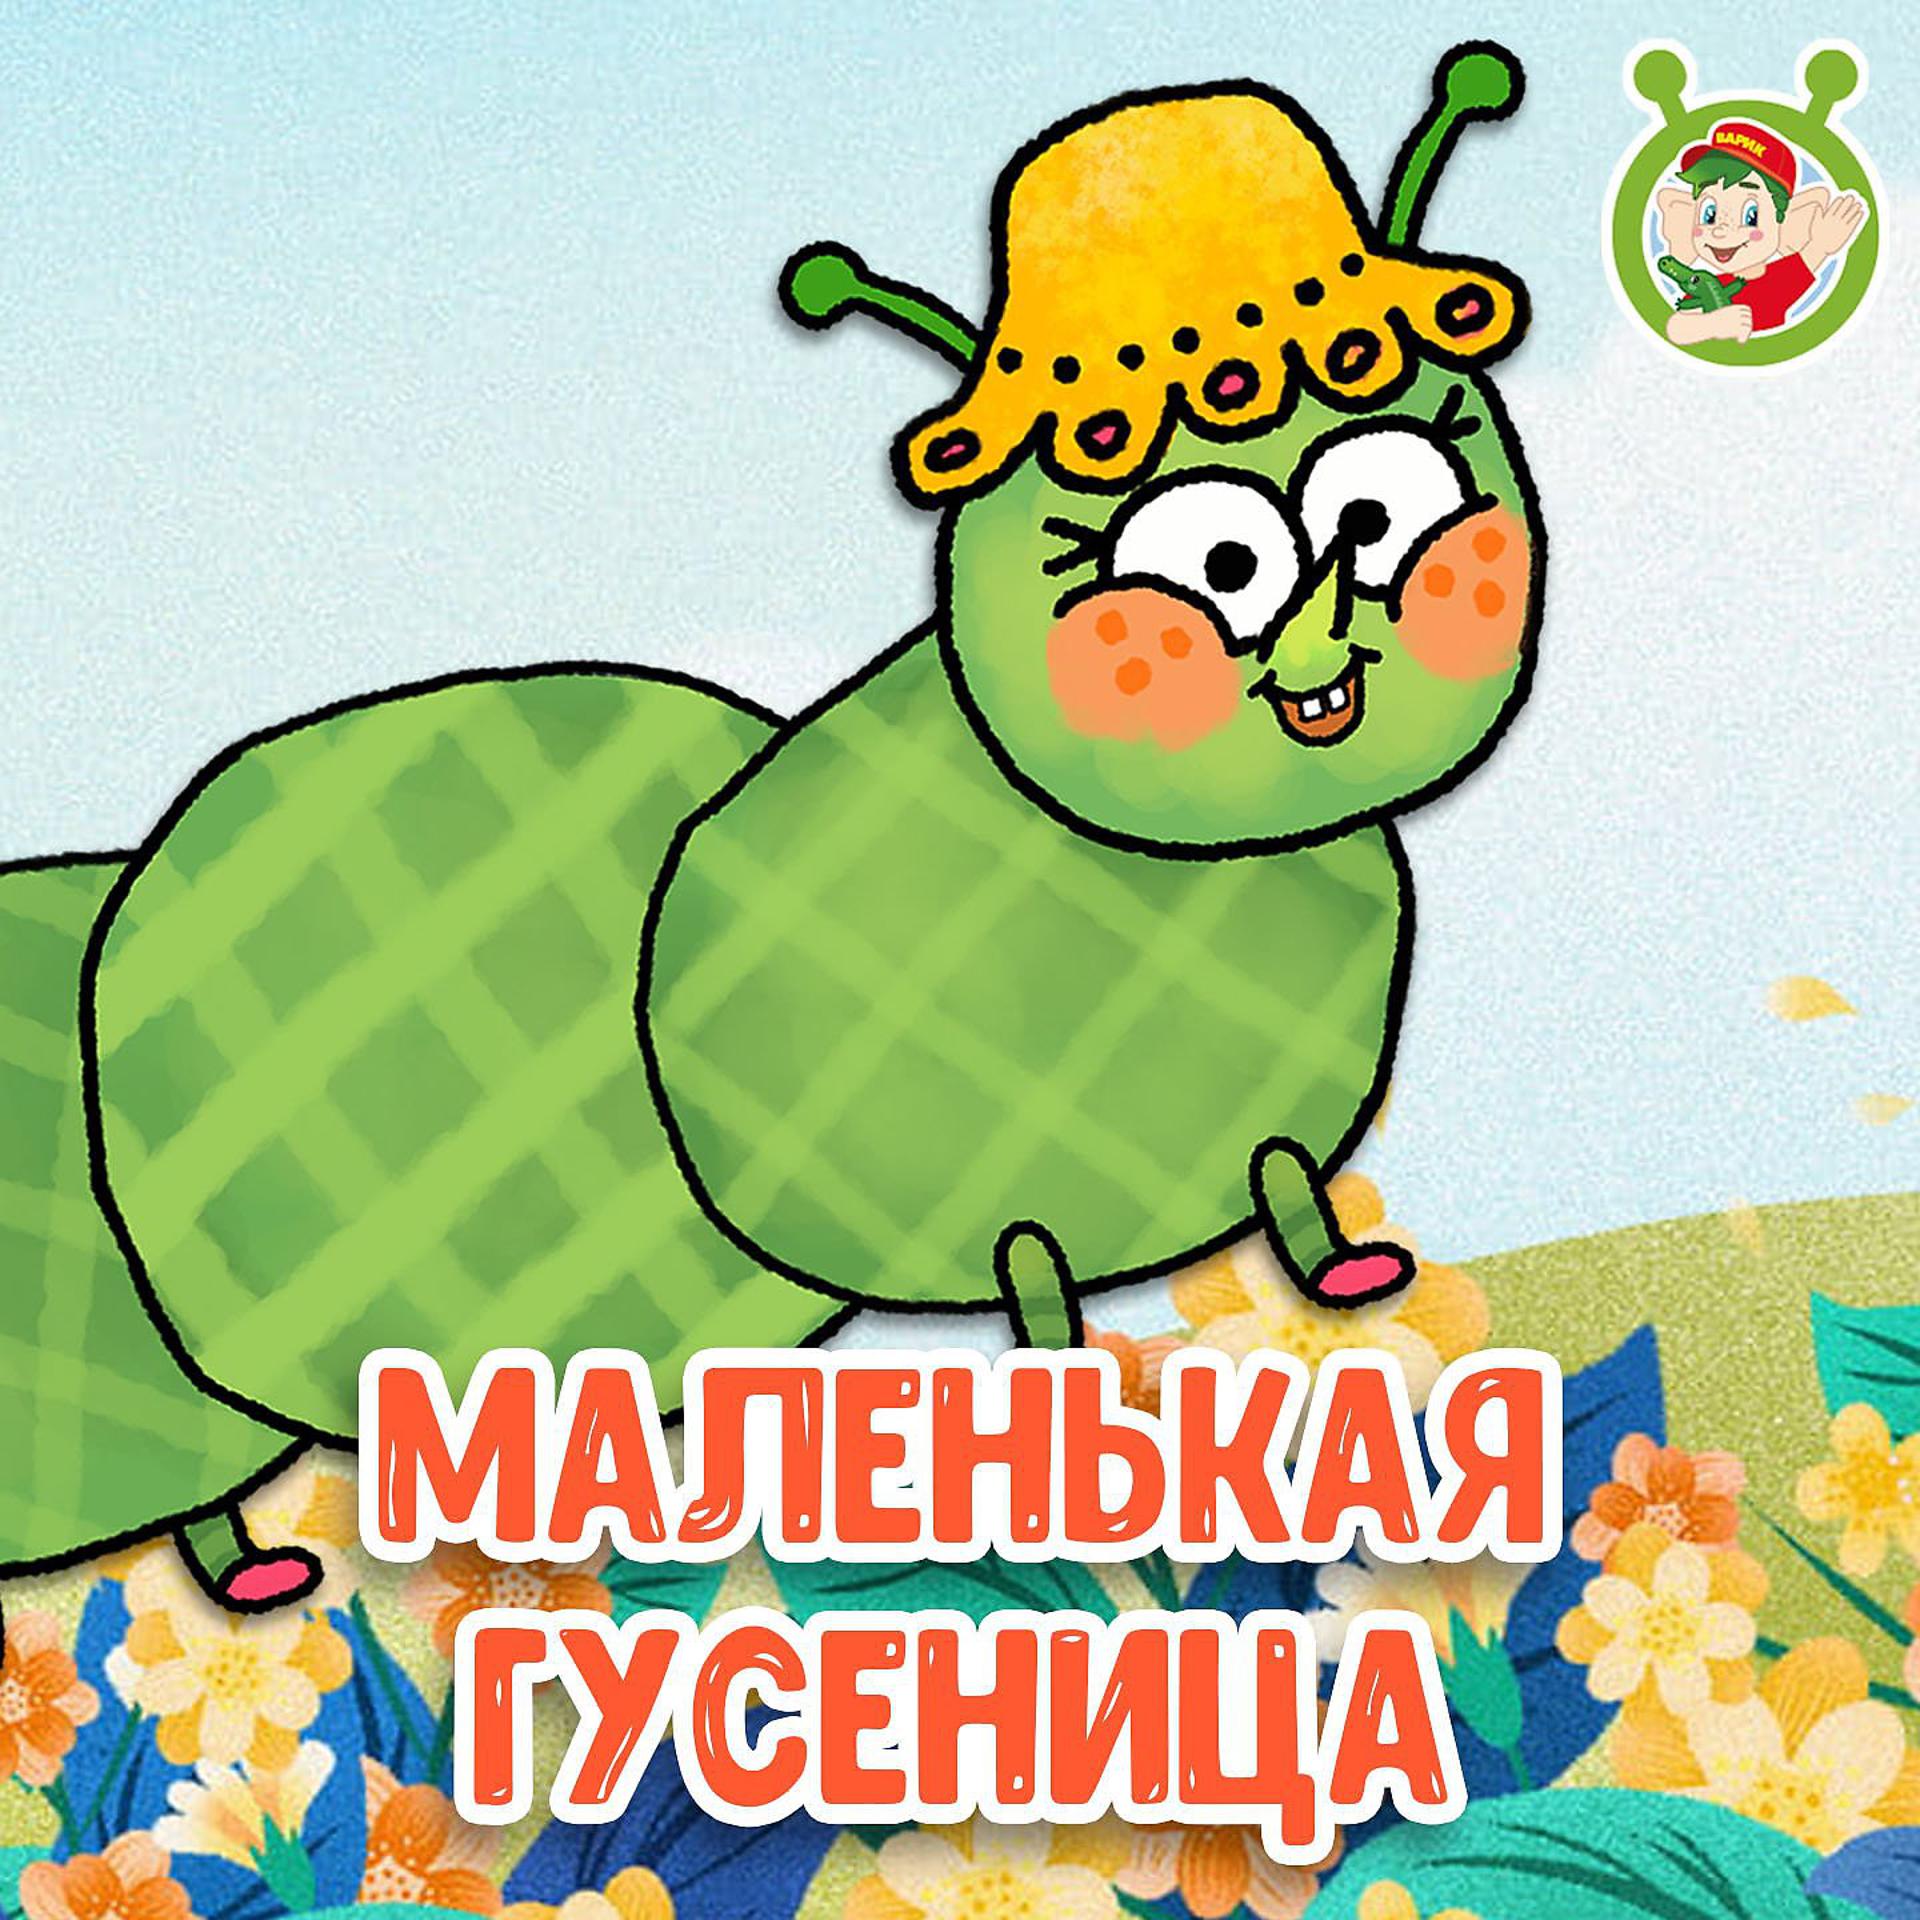 Постер к треку МУЛЬТИВАРИК ТВ - Маленькая гусеница